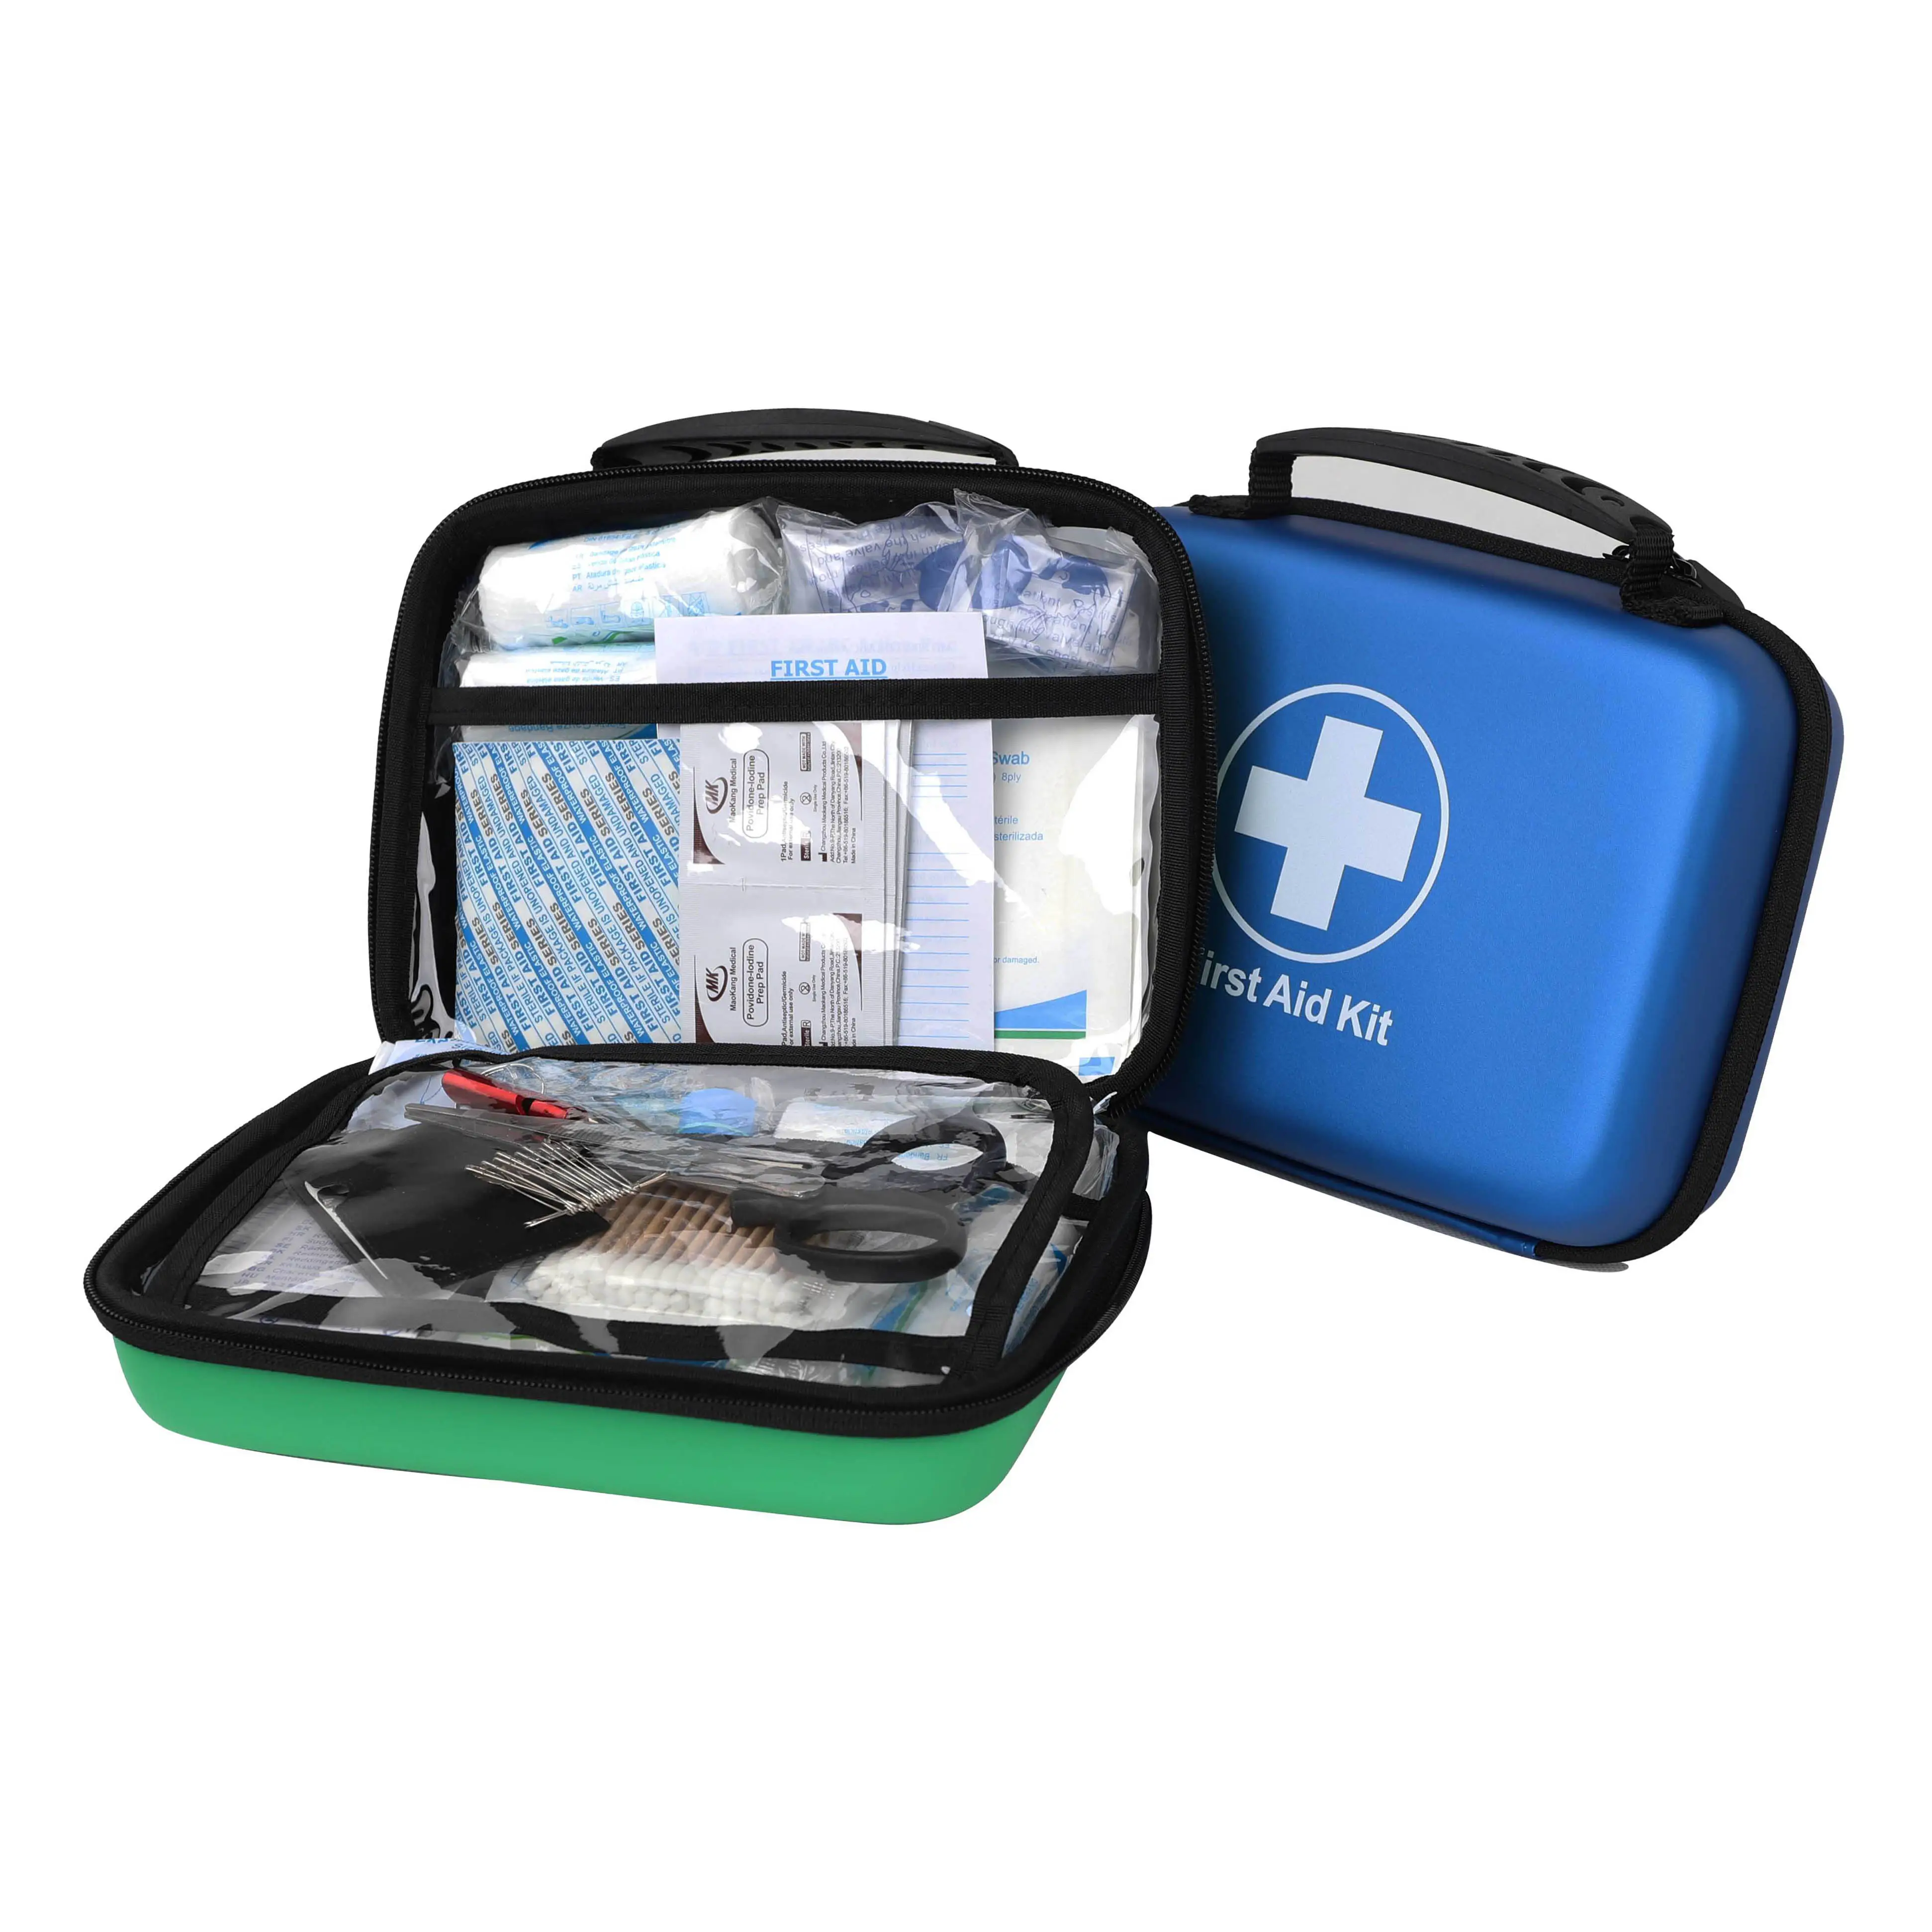 Di primo Soccorso E di Lavaggio Degli Occhi Kit Da Viaggio Portatile Kit di Primo Soccorso Approvato E Medic Set